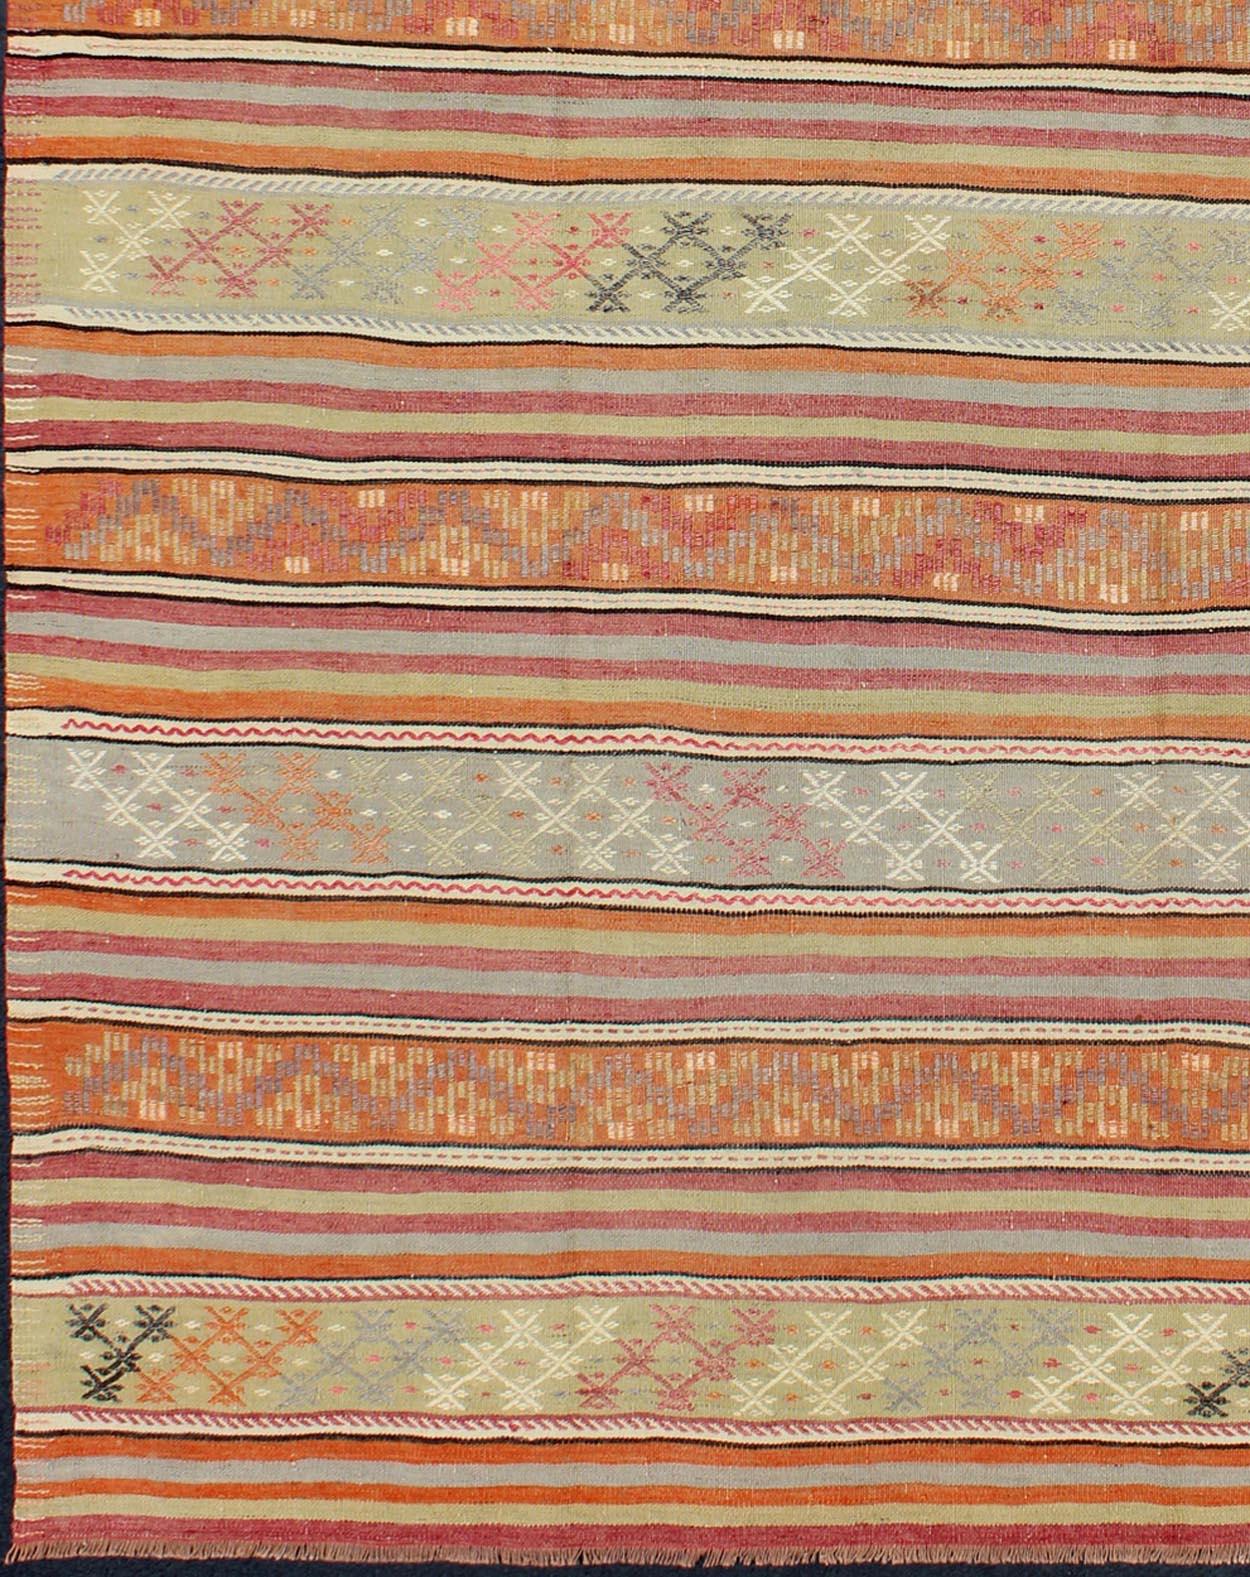 Tapis vintage turc Kilim à motifs de rayures assorties, tapis TU-NED-122, pays d'origine / type : Turquie / Kilim, circa mid-20th century

Doté d'un motif de rayures horizontales répétées et d'un assortiment de motifs géométriques, ce kilim unique